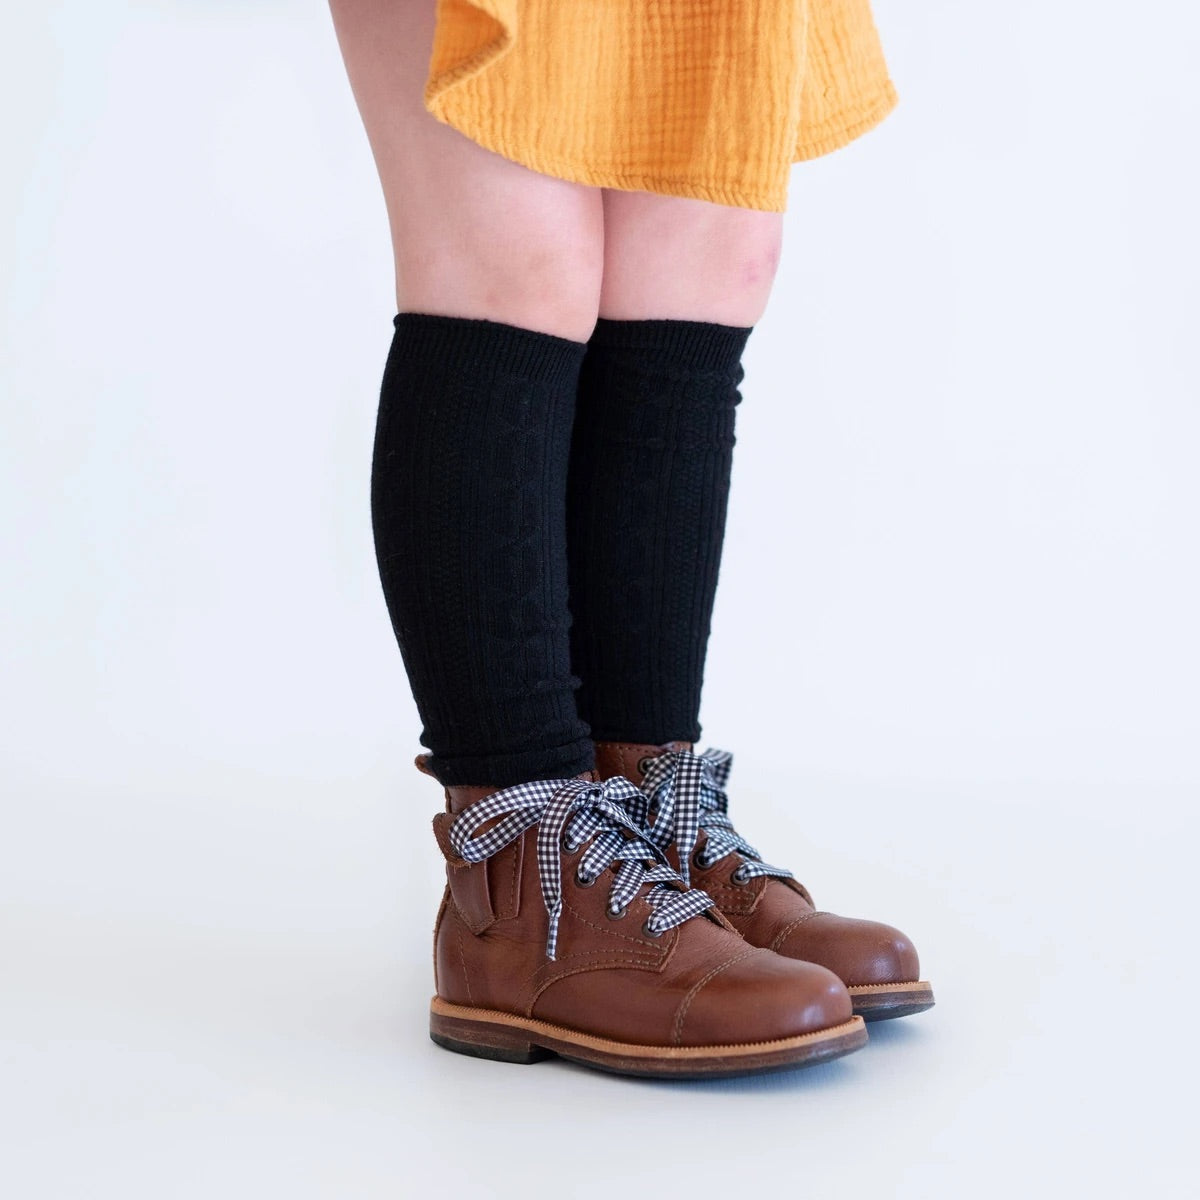 Cable Knit Knee High Socks in Black  - Doodlebug's Children's Boutique